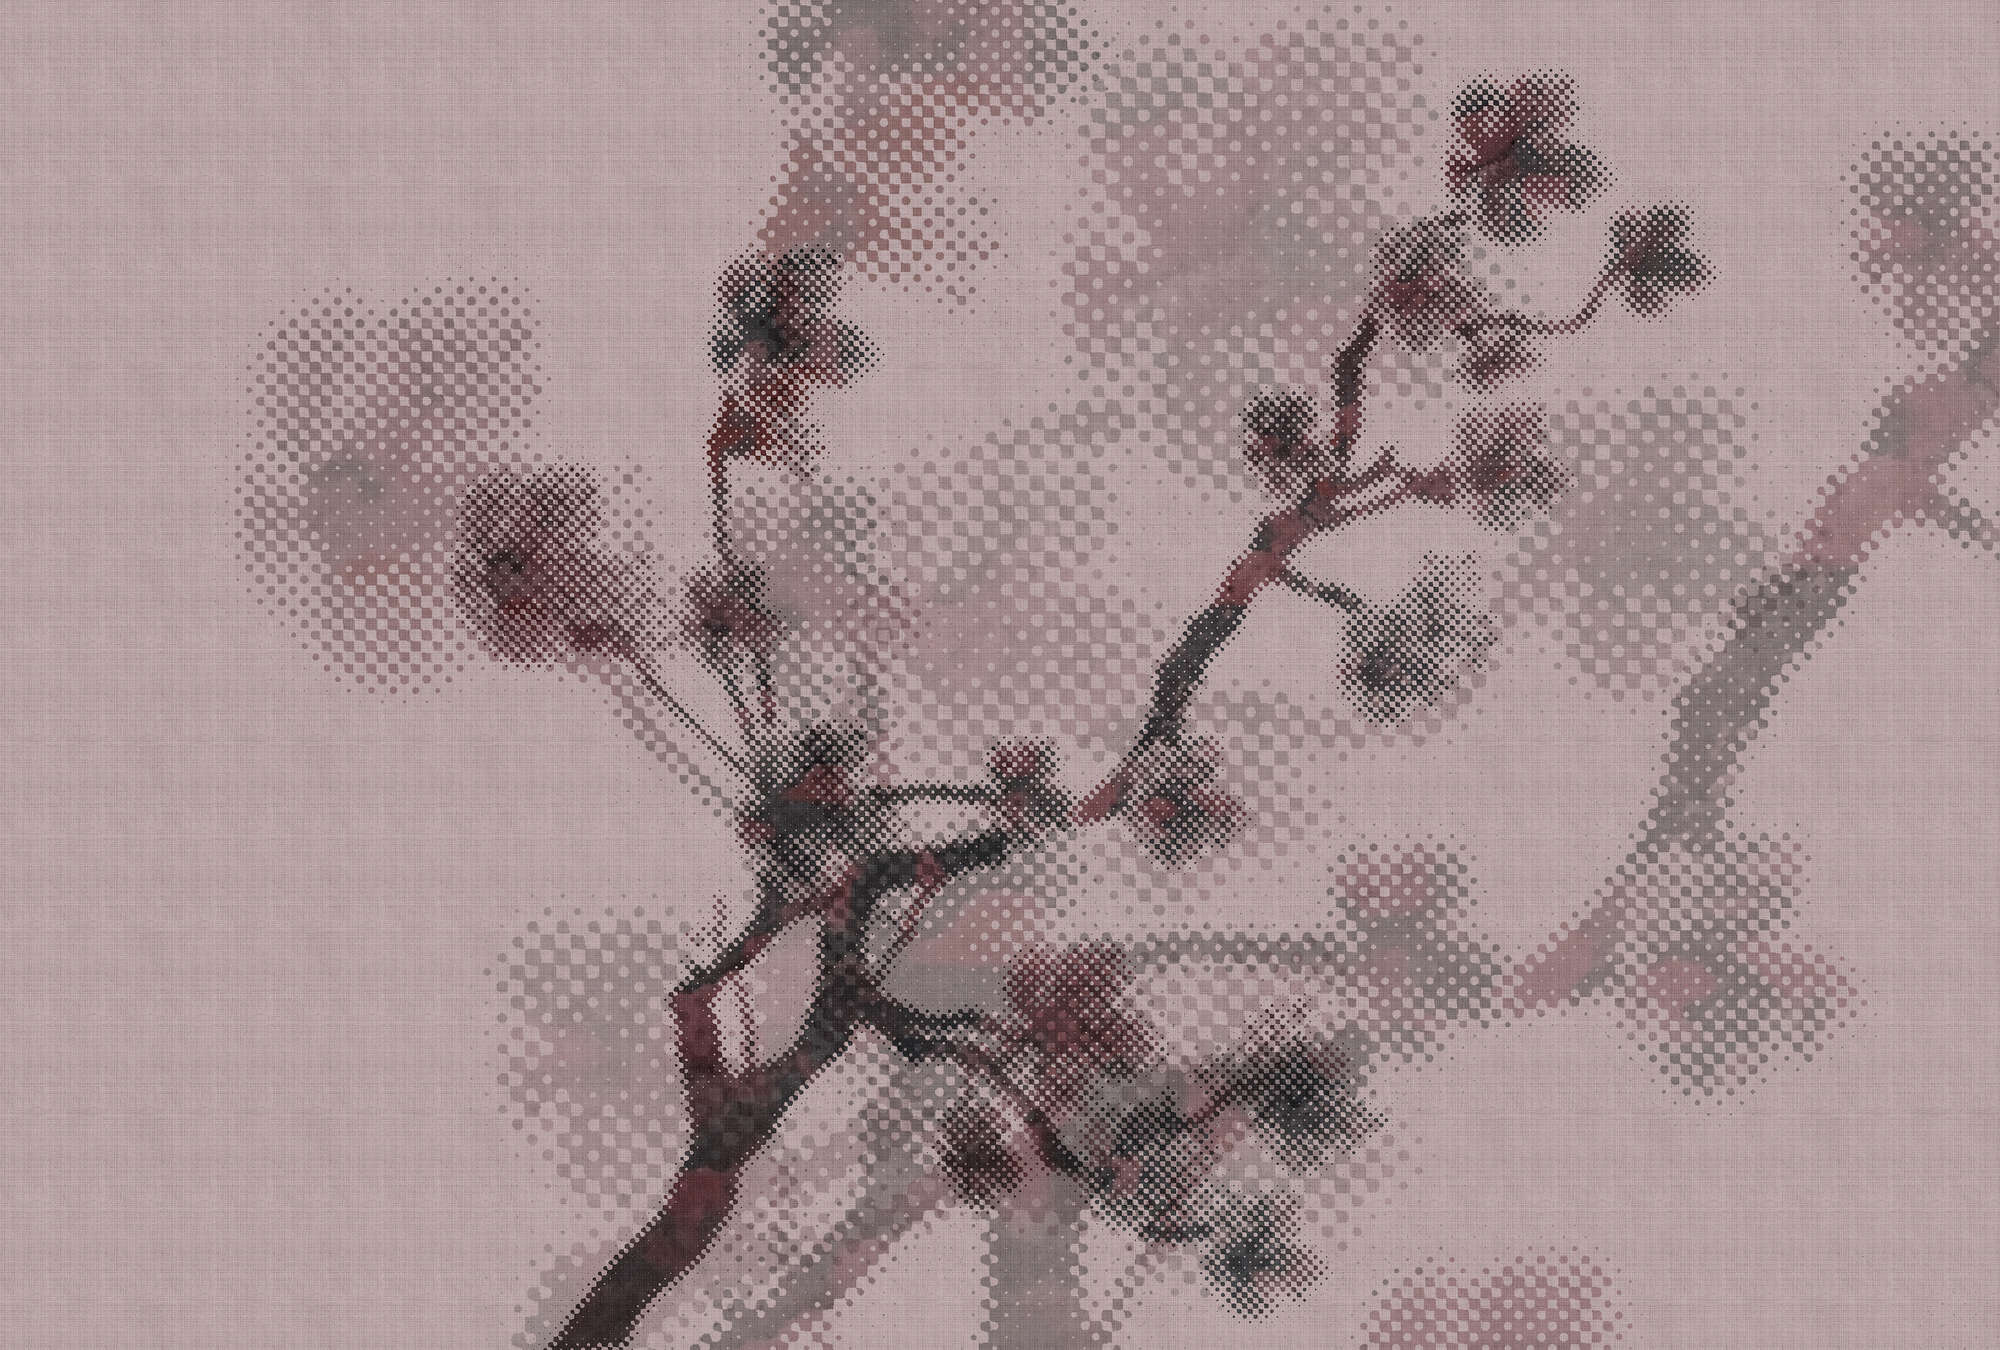             Twigs 3 - Papel pintado con motivo naturaleza y diseño pixelado - estructura de lino natural - vellón liso rosa | nácar
        